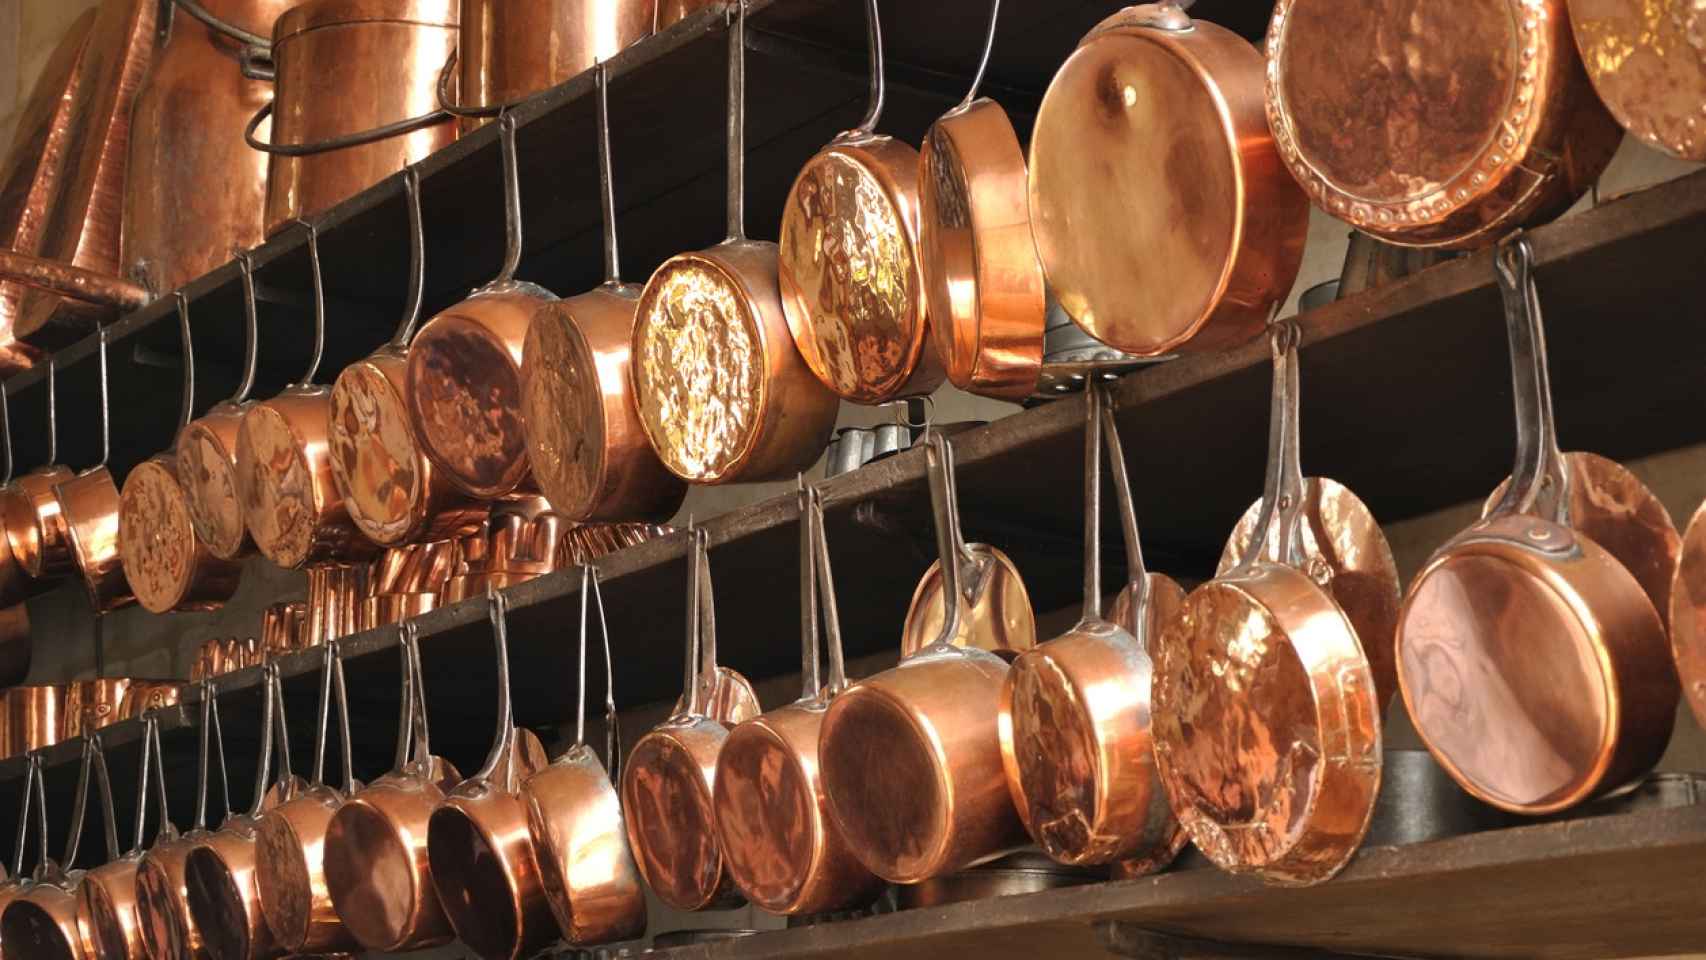 El cobre es un excelente conductor del calor, pero puede alterar el sabor de los alimentos.